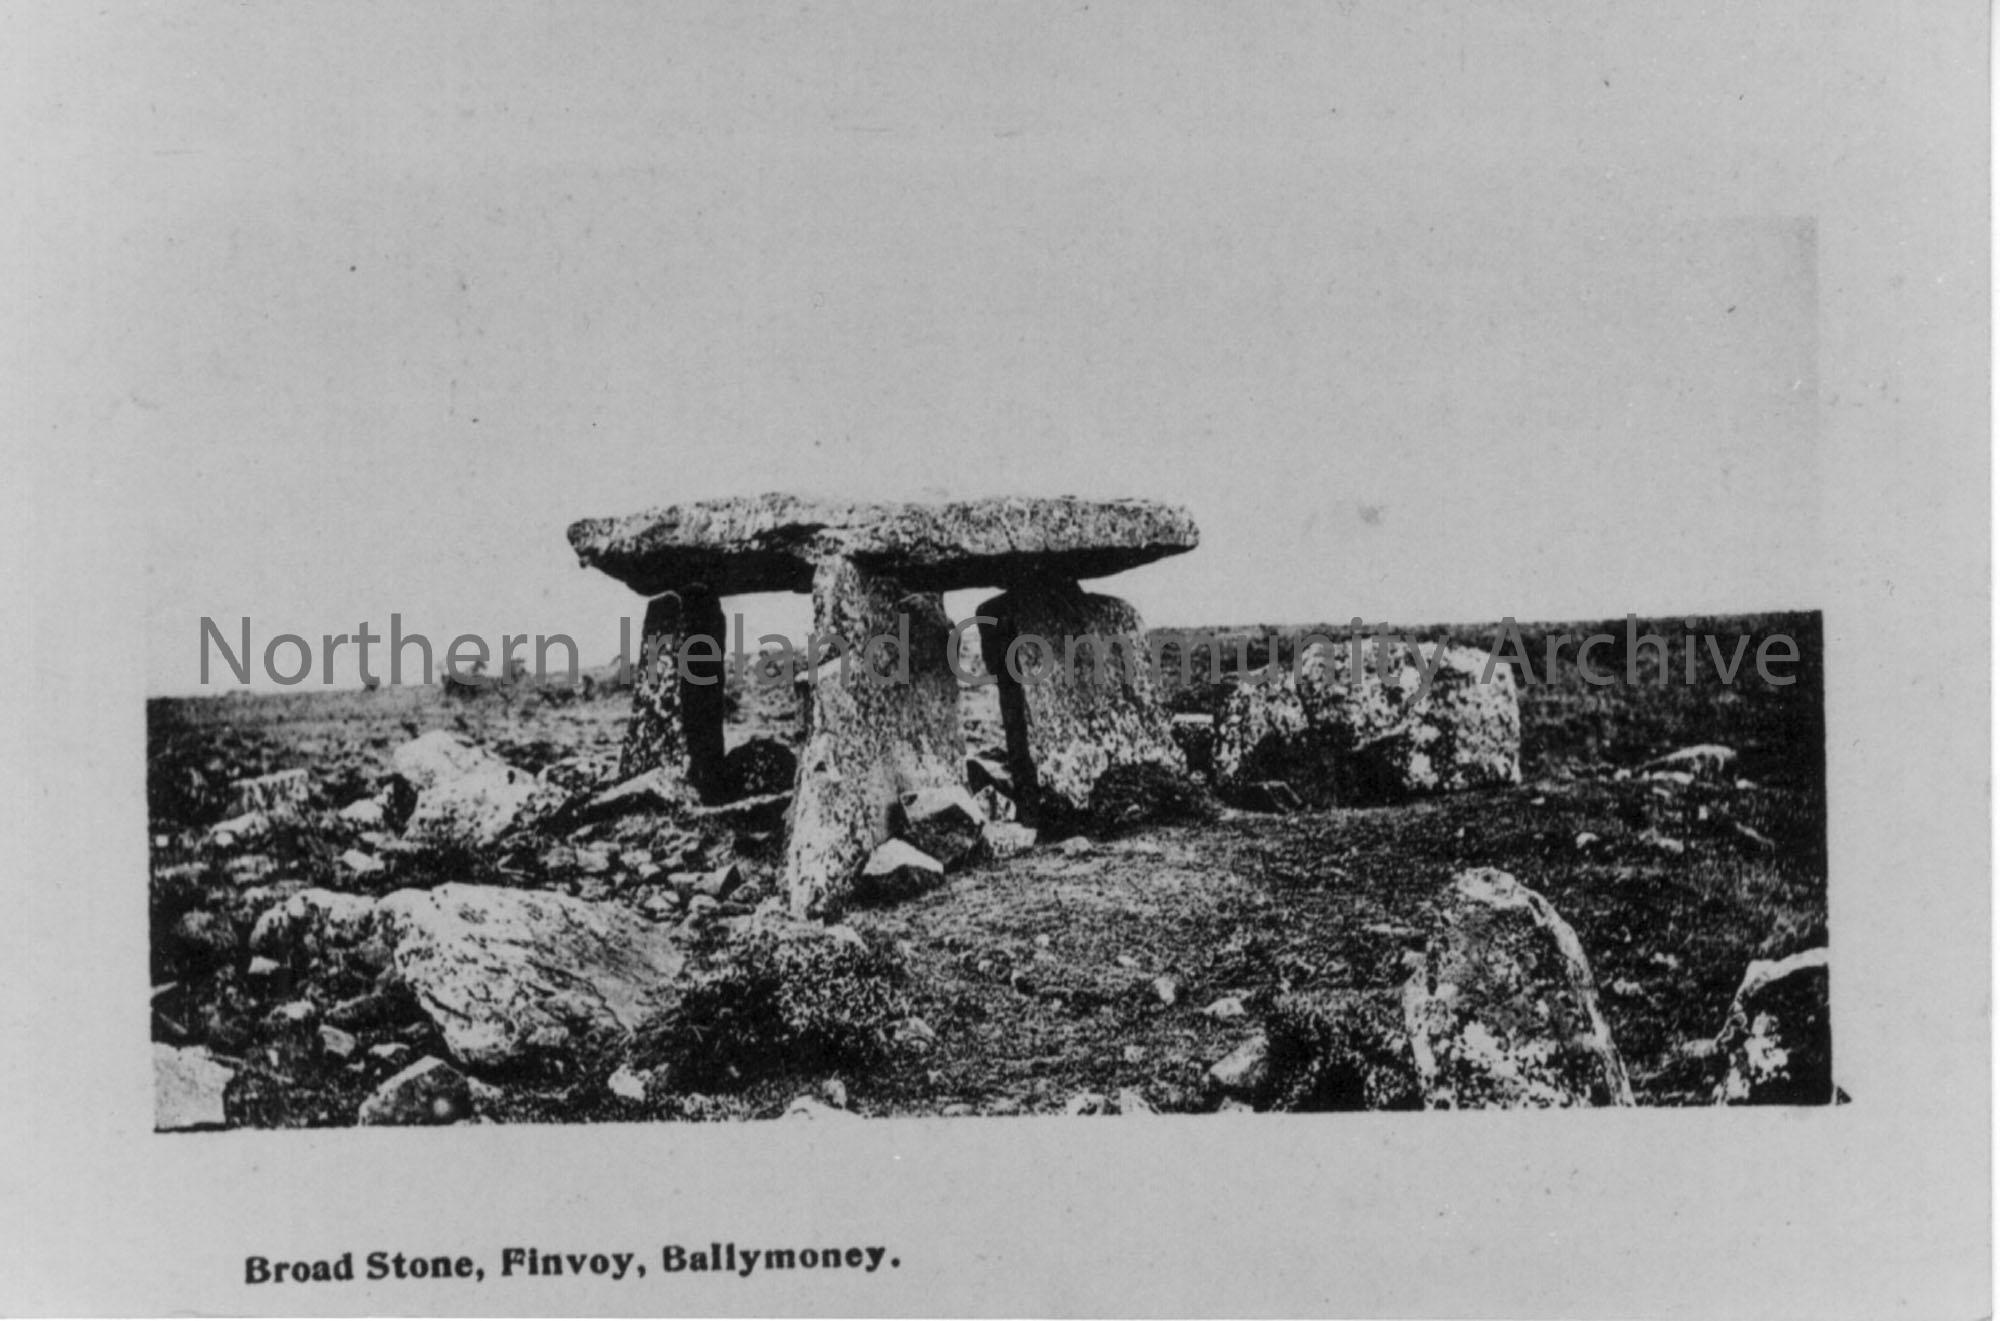 Broad Stone, Finvoy, Ballymoney